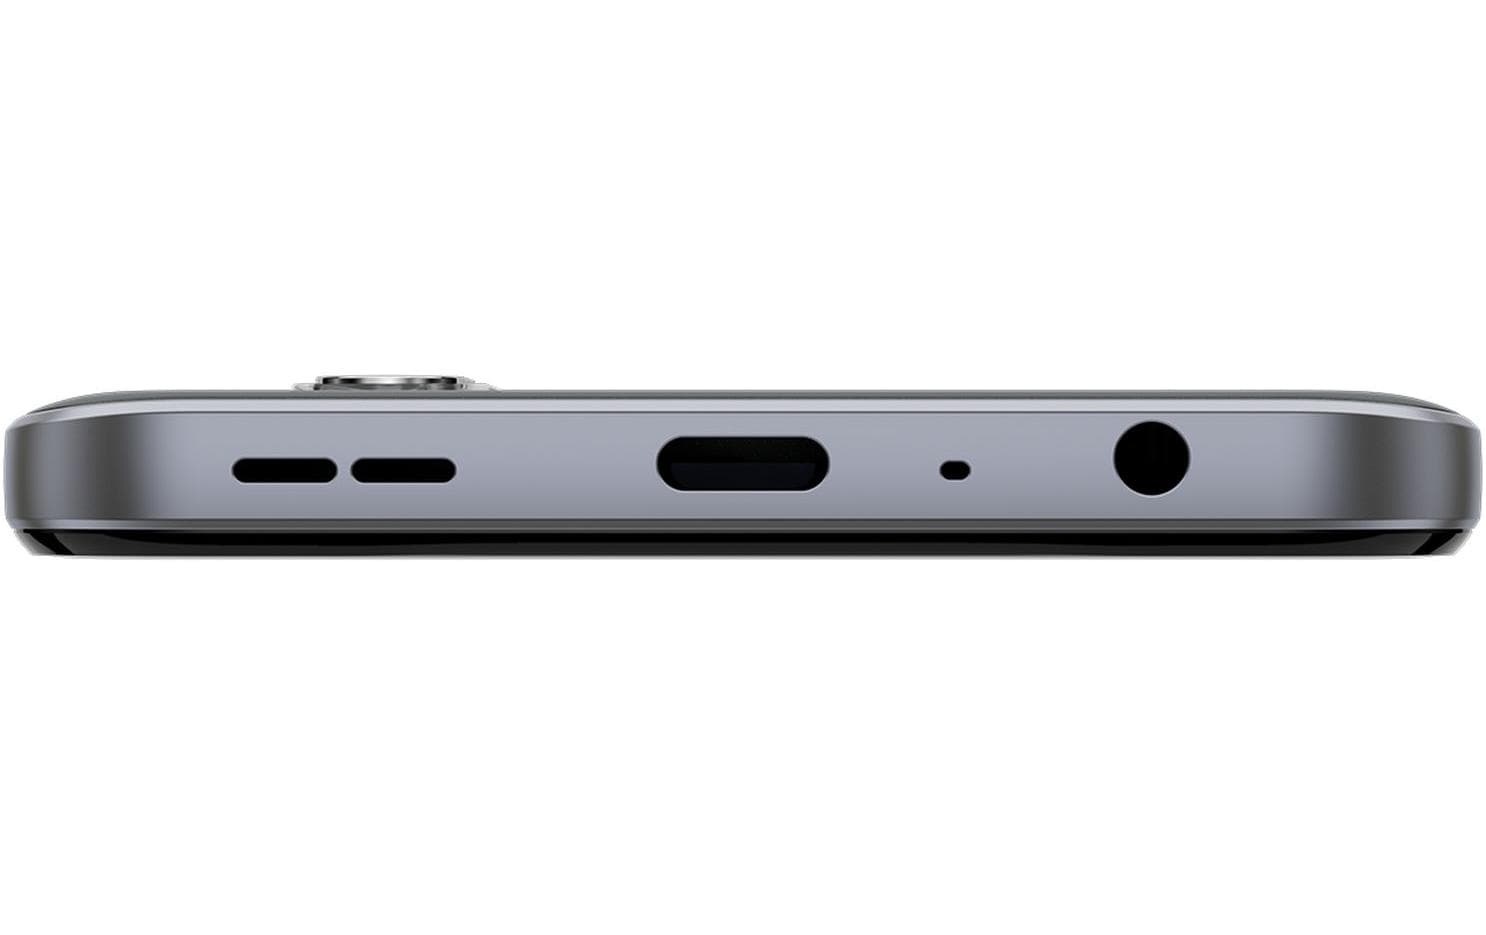 Nokia Smartphone »G42 128 GB Grey«, Grau, 16,59 cm/6,56 Zoll, 128 GB Speicherplatz, 50 MP Kamera